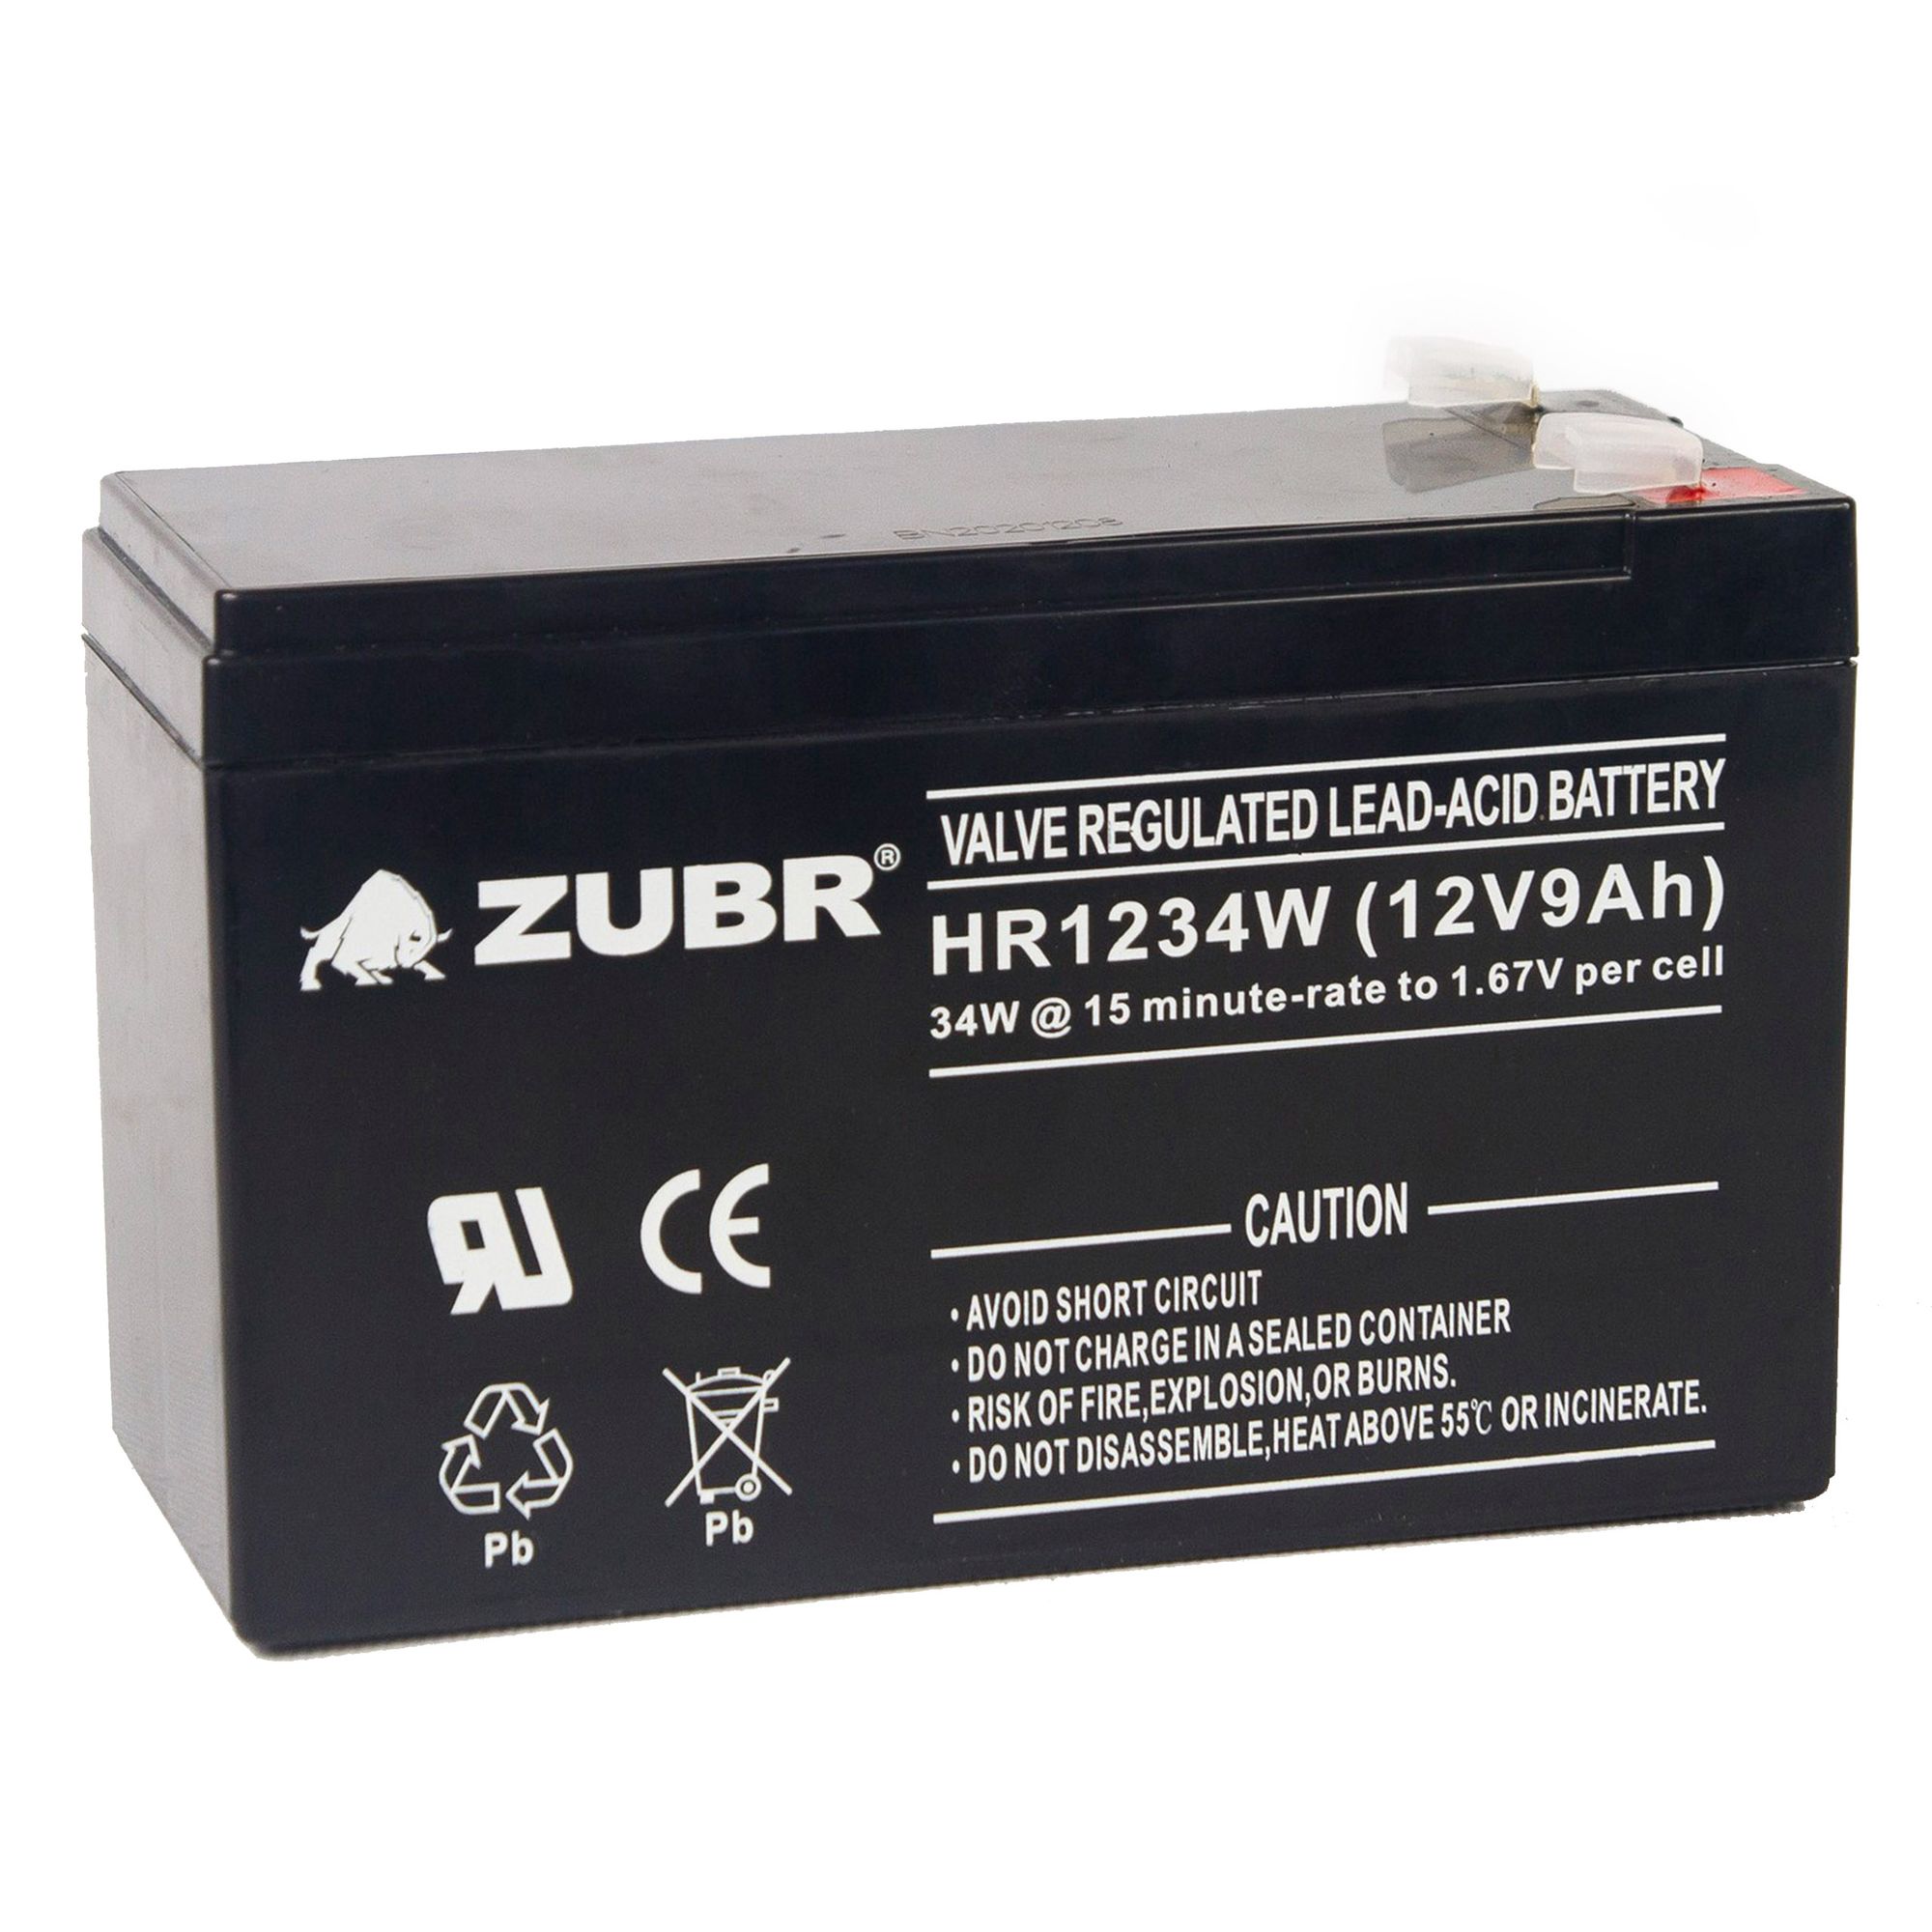 Батарея для ИБП ZUBR HR 1234 W (12V, 9Ah) (HR1234W) батарея csb hrl1234w 12v 9ah f2fr